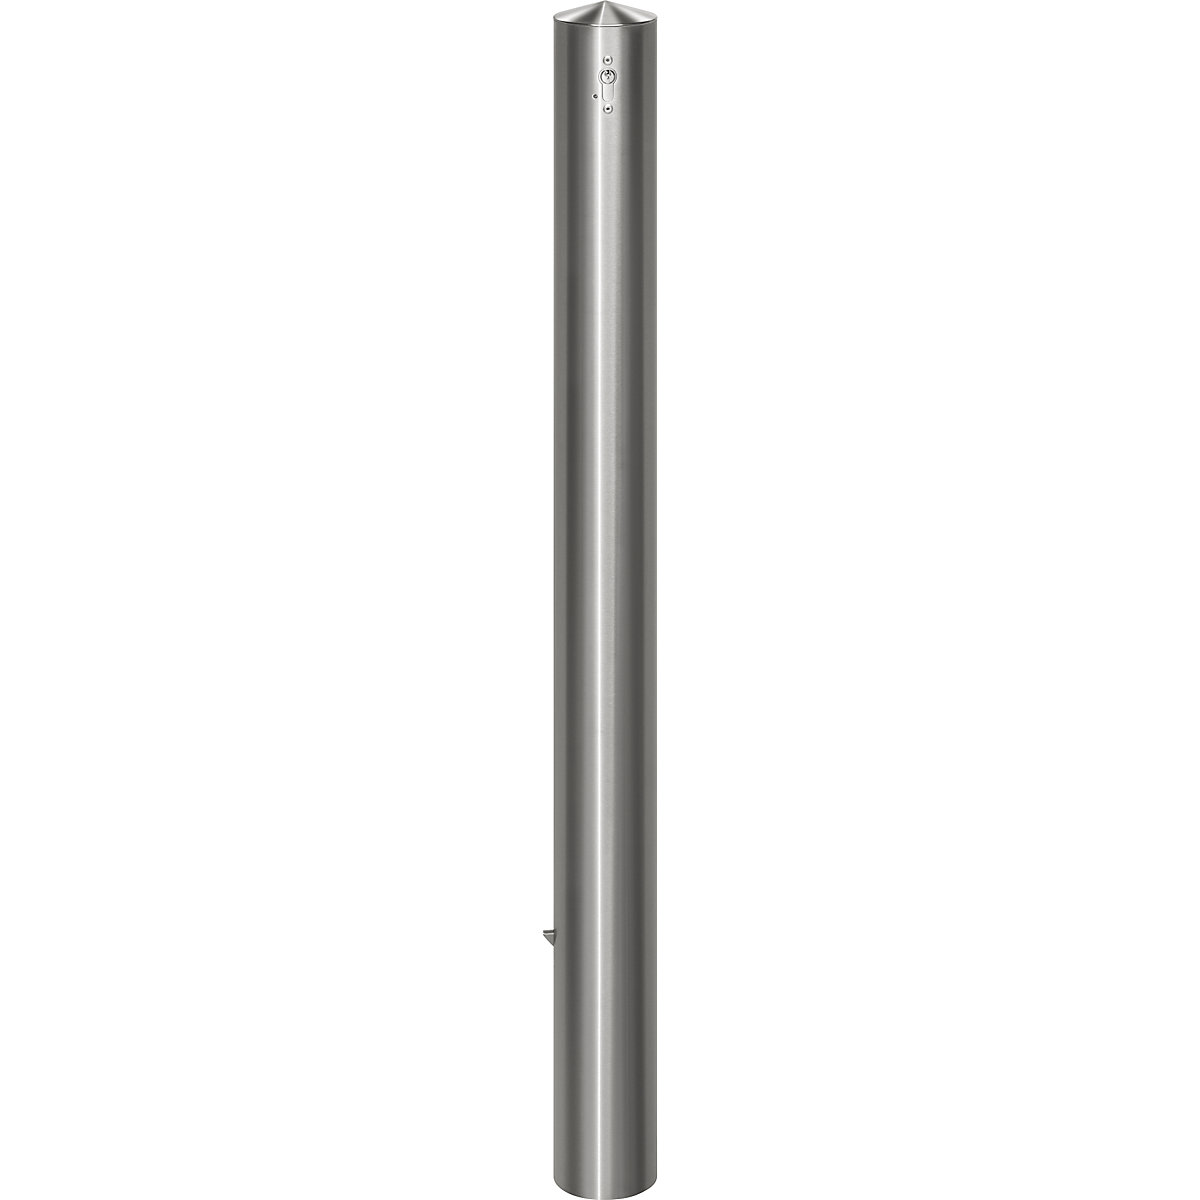 Poste de barreira em aço inoxidável, com cabeça direita, para encastrar em betão com encaixe de solo, Ø 102 mm, cilindro de perfil-7